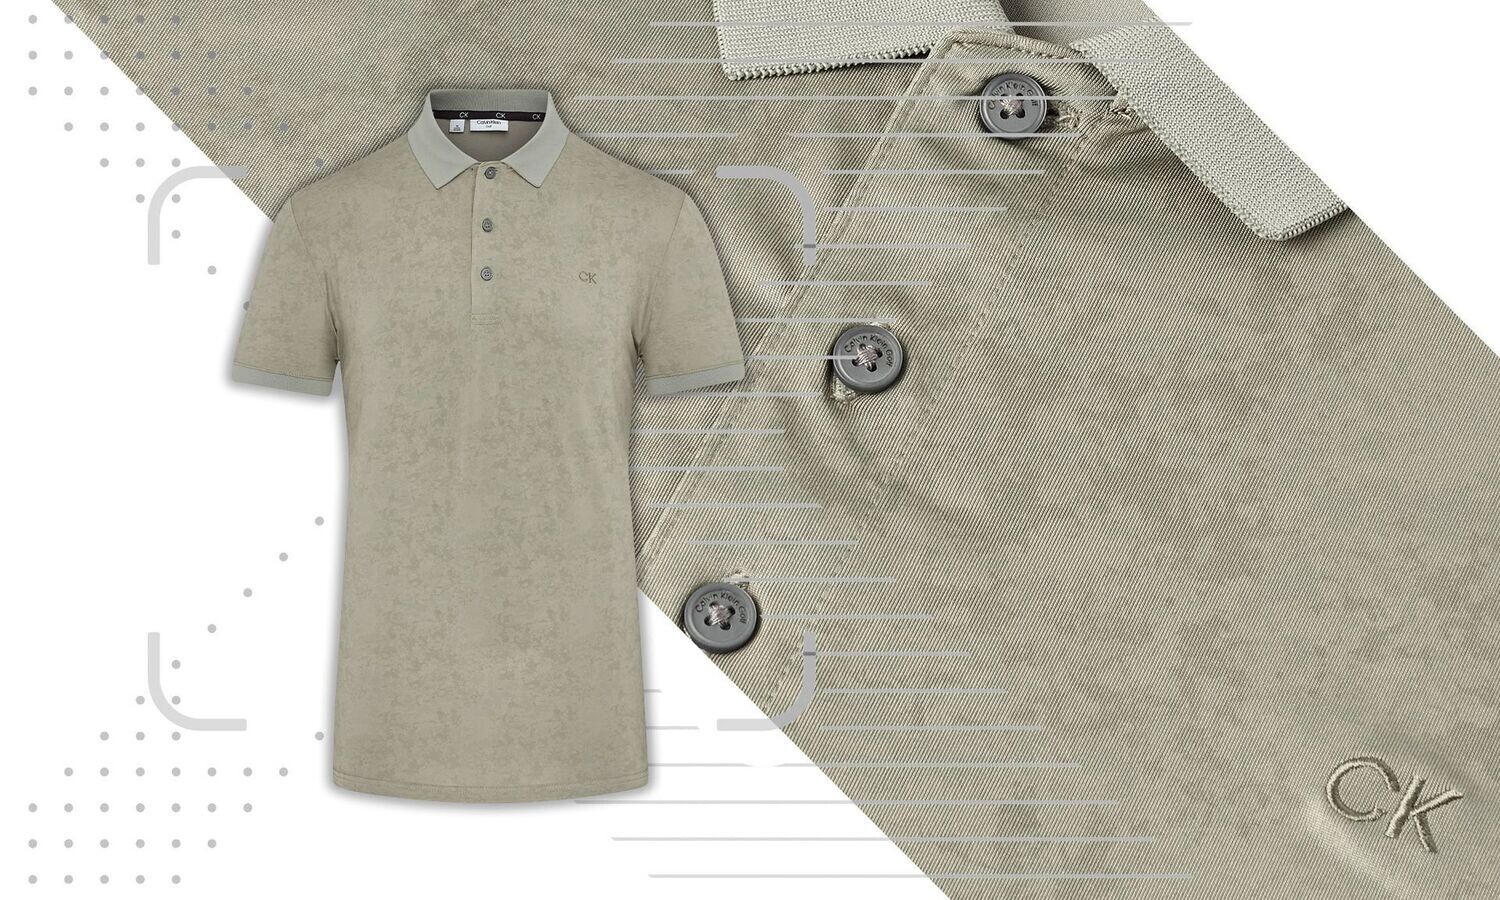 Calvin Klein Tie Dye Print Golf Polo Shirt - Camo Green, Size: Medium